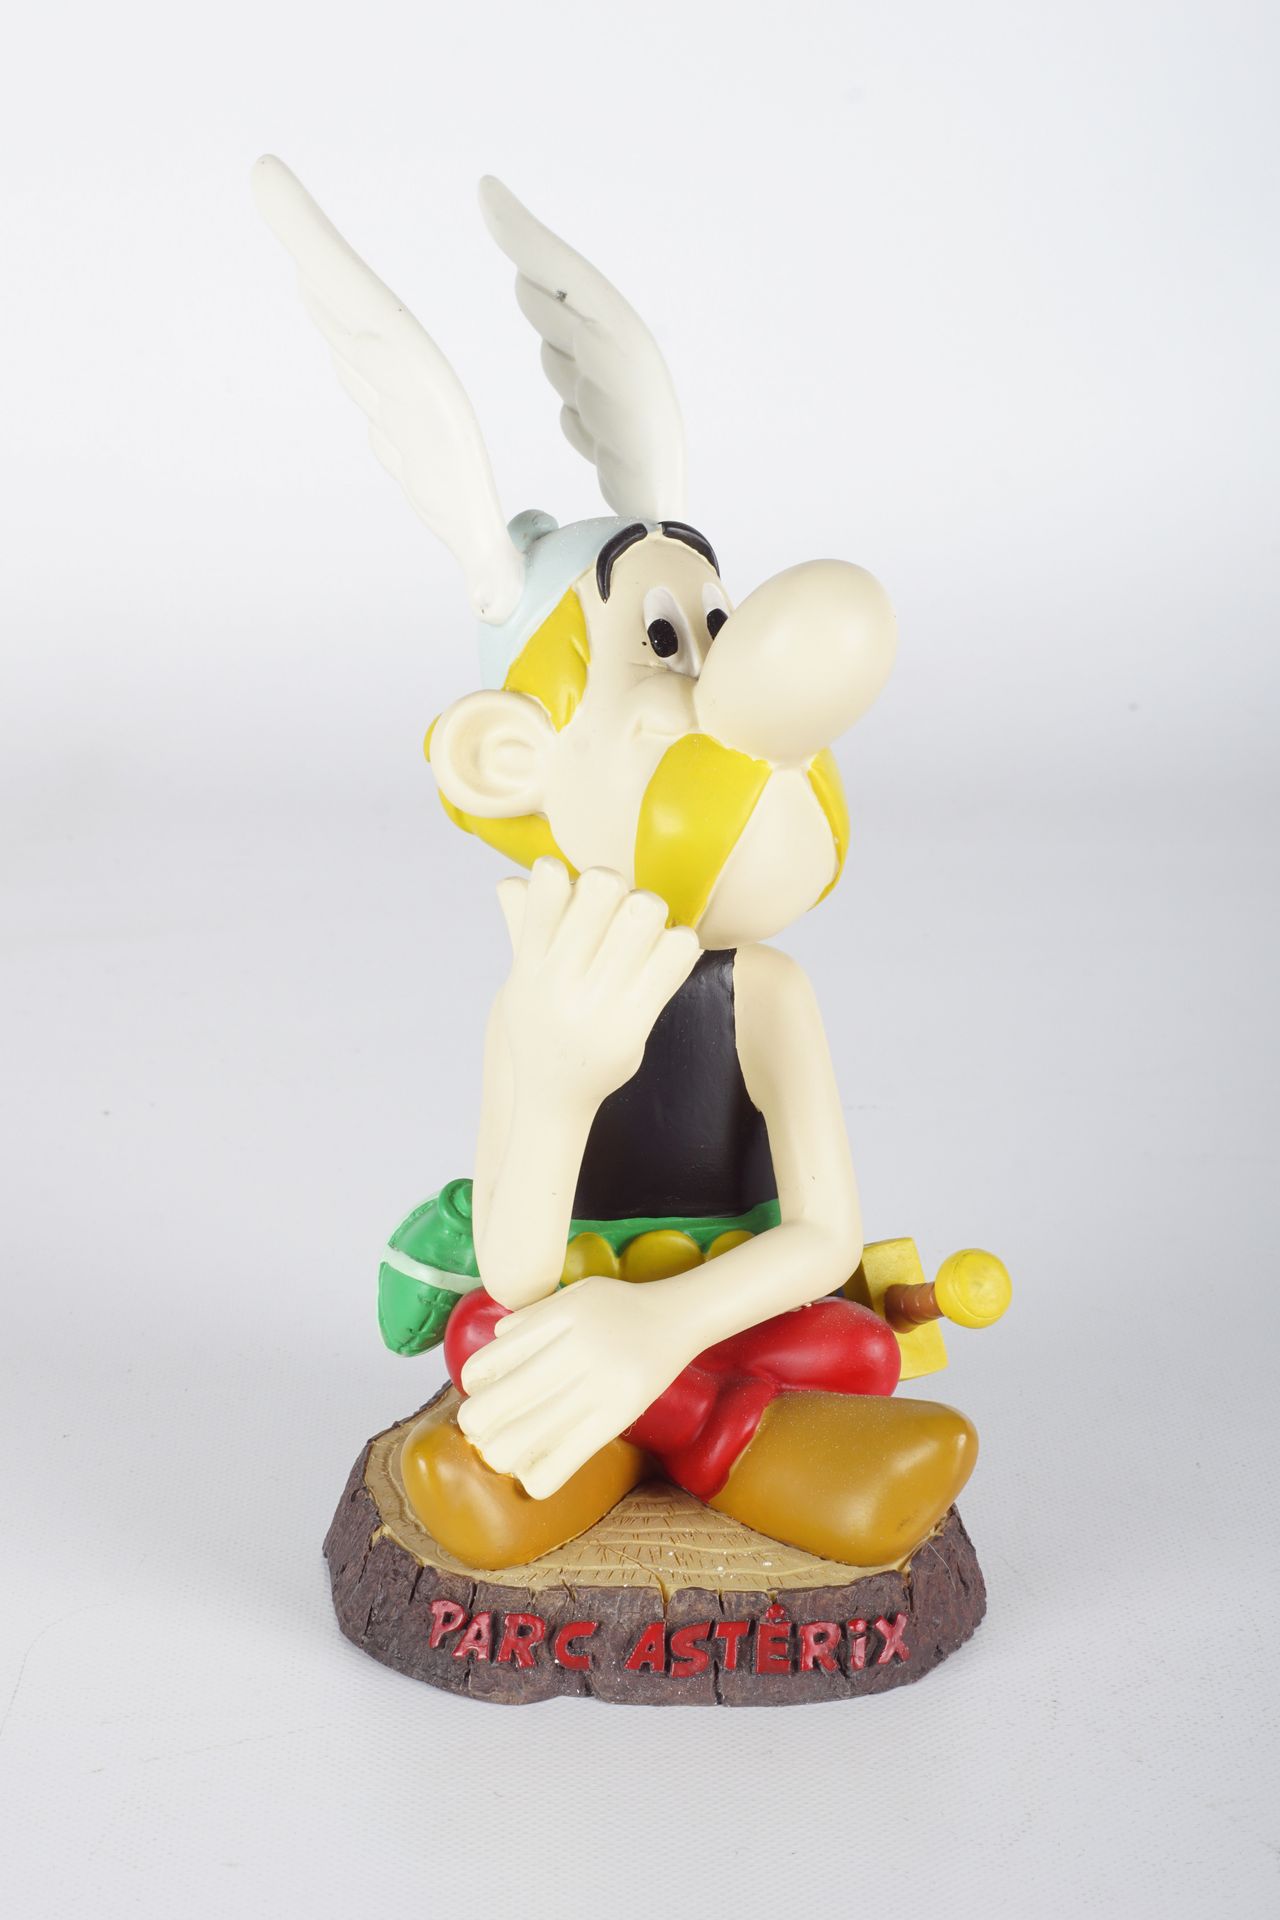 UDERZO, Albert (1927-2020) Asterix, Asterix公园限量版, 2004, B